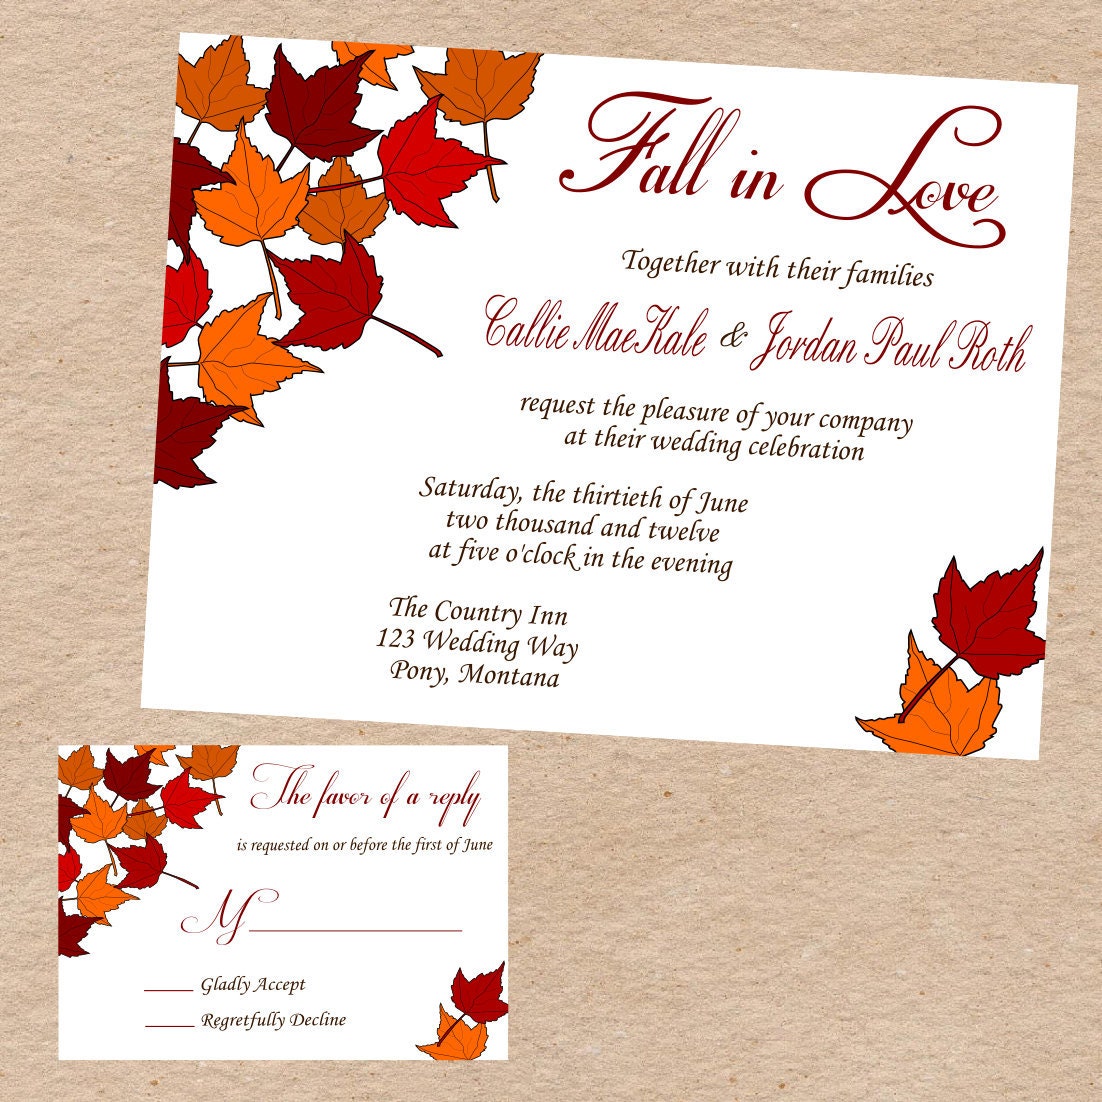 Autumn wedding invitation quotes